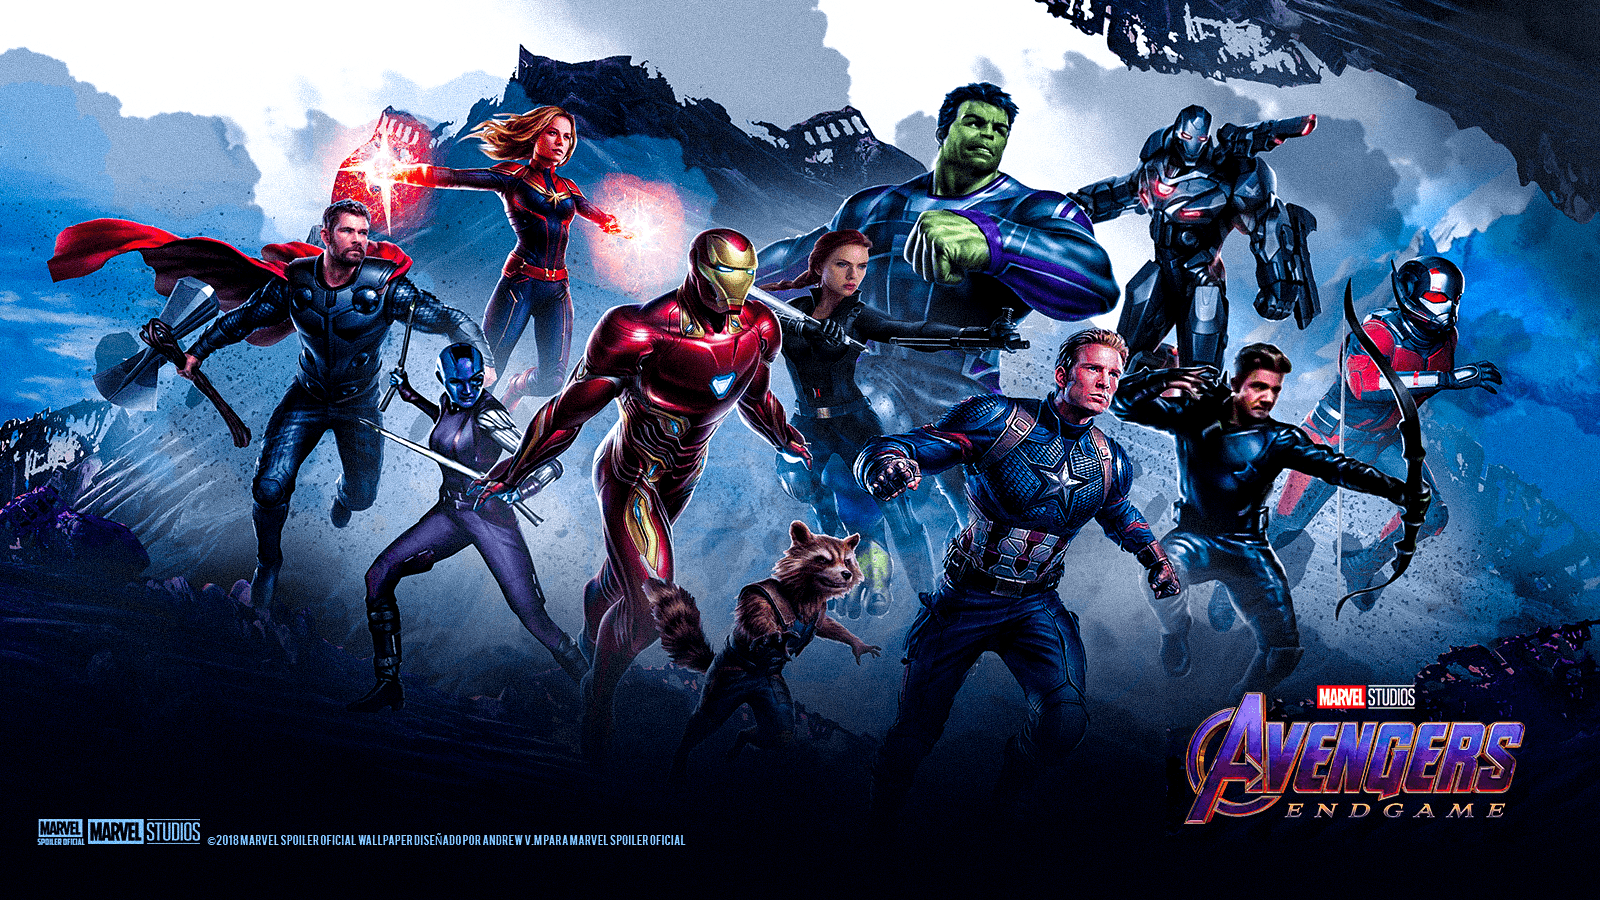 Avengers Endgame Wallpaper - Wallpaper Cave avengers wallpaper endgame 4k end game infinity war- #iphonewall. Avengers wallpaper, Avengers, Best avenger